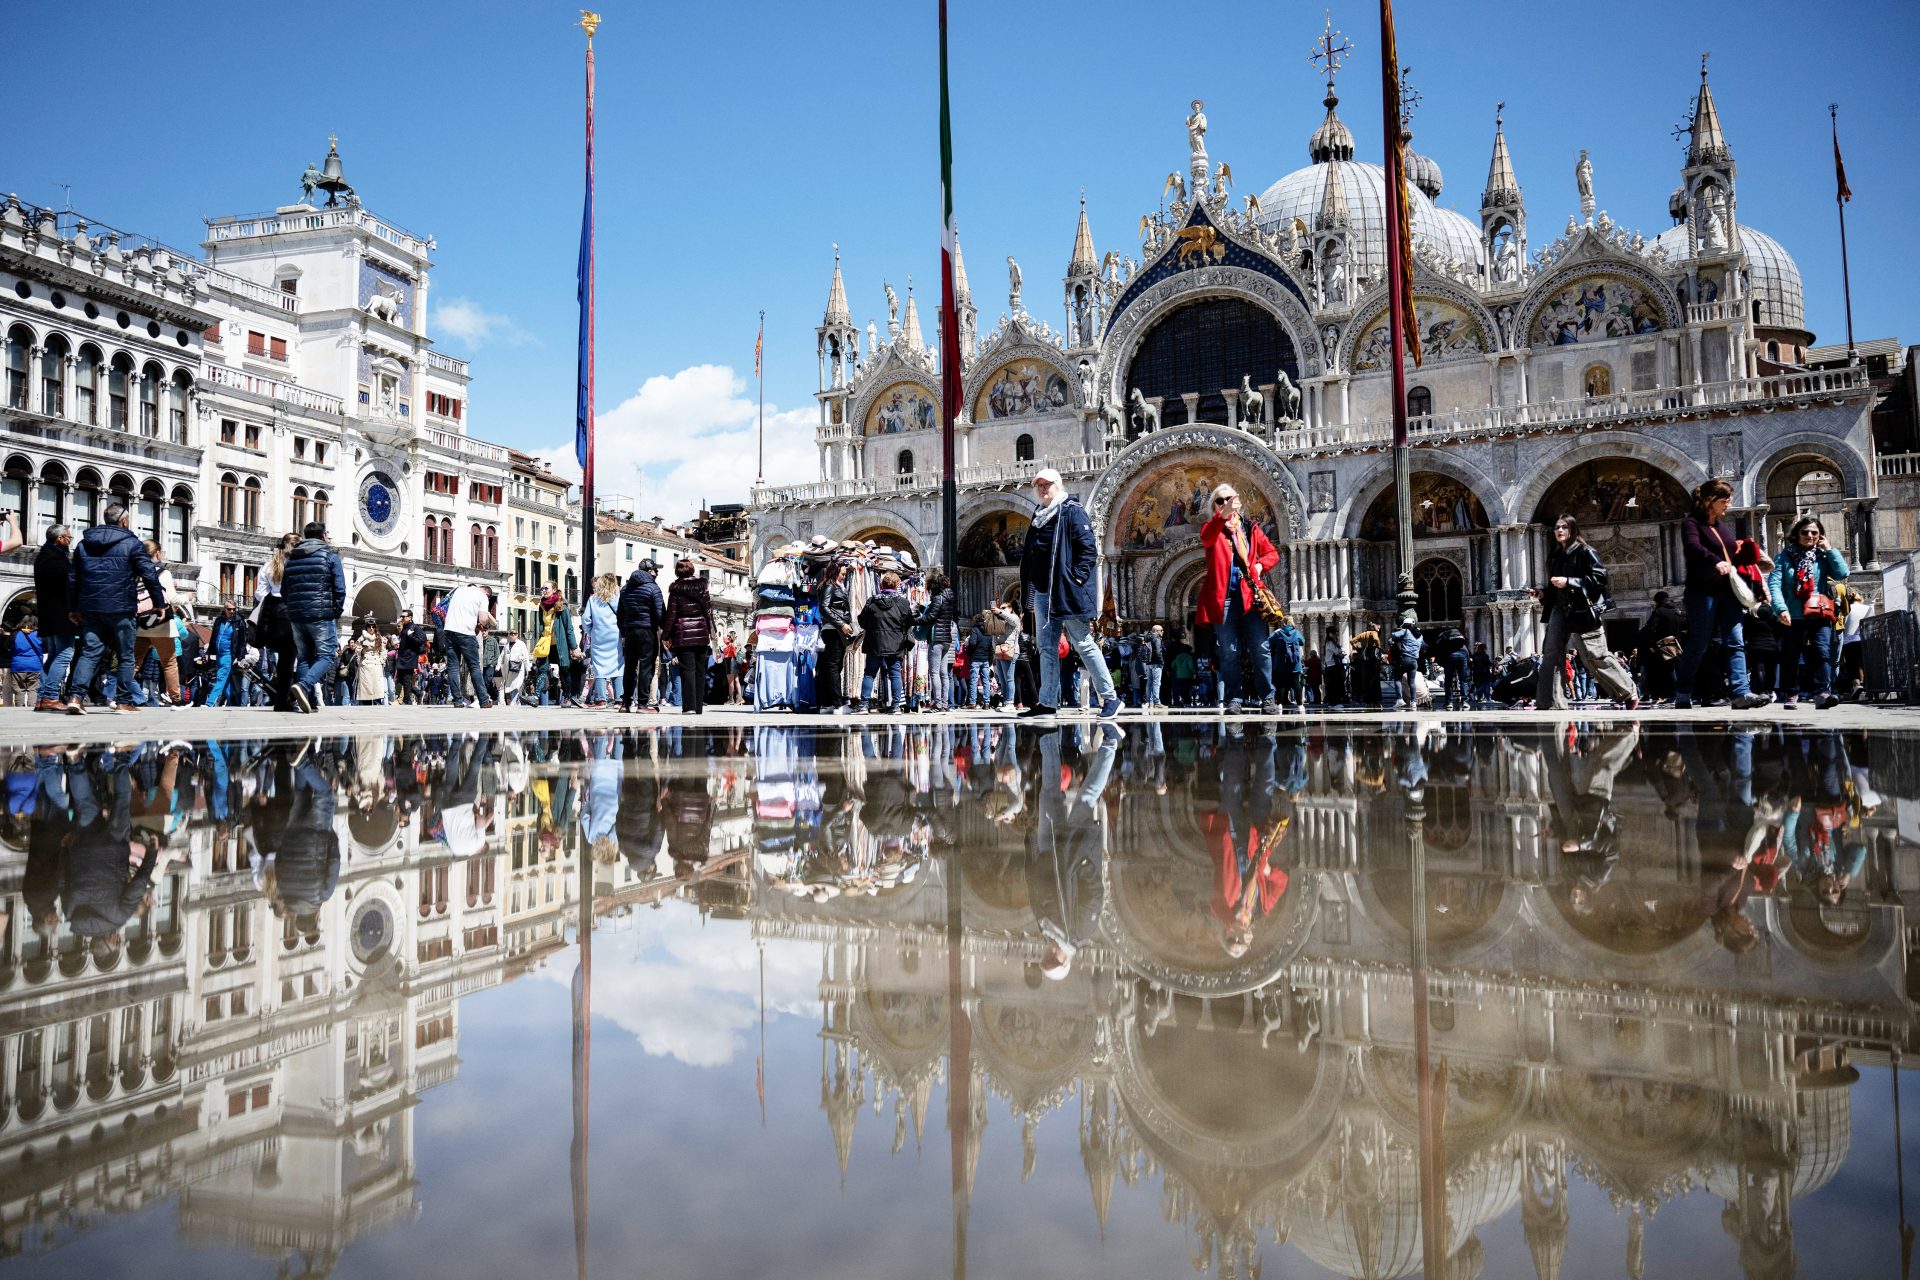 Eine Reise nach Venedig wird nie mehr so sein wie früher: diese Maßnahme verändert alles